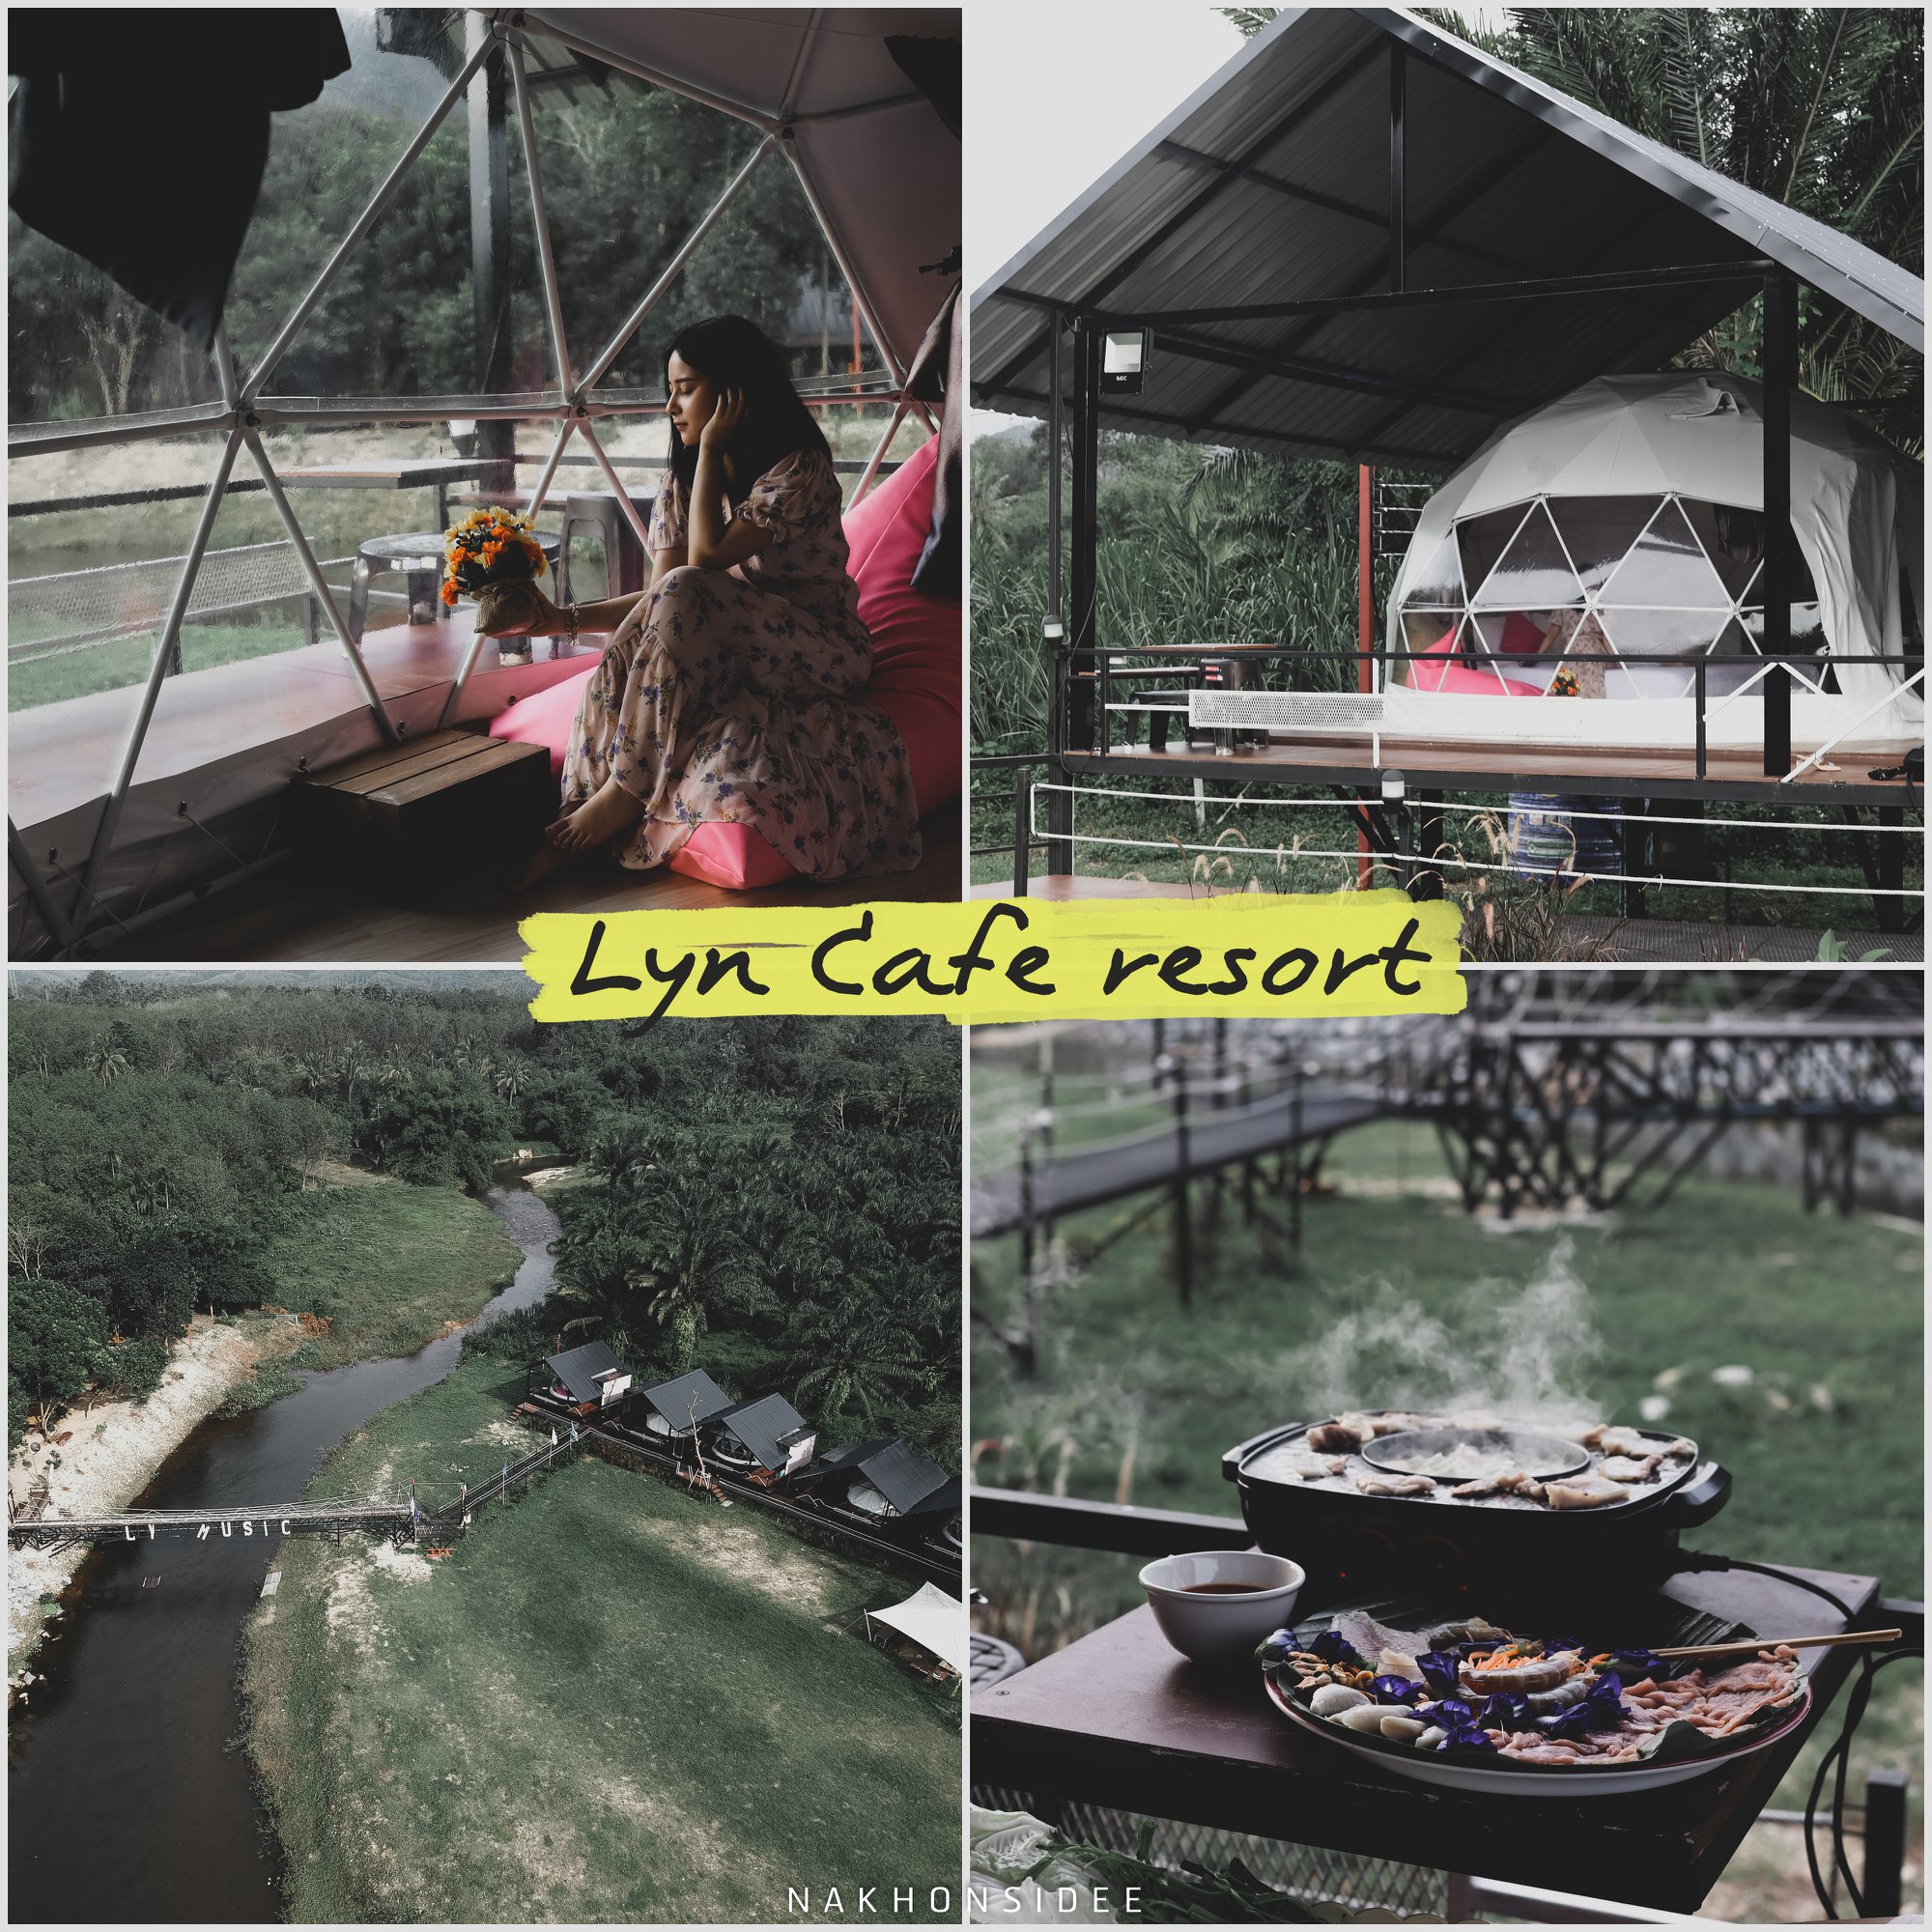  Lyn-Cafe-Resort---Camping-กระโจมสุดสวย-และเต็นท์สุดสวยชิวๆริมลำธาร-พร้อมปิ้งย่างฟินๆ-เด็ดมากกก-อุปกรณ์อำนวยความสะดวกพร้อม-แอร์-ทีวี-ห้องน้ำส่วนตัว-บอกเลย-10/10
คลิกที่นี่ ช้างกลาง,นครศรีธรรมราช,วิวหลักล้าน,กลางป่า